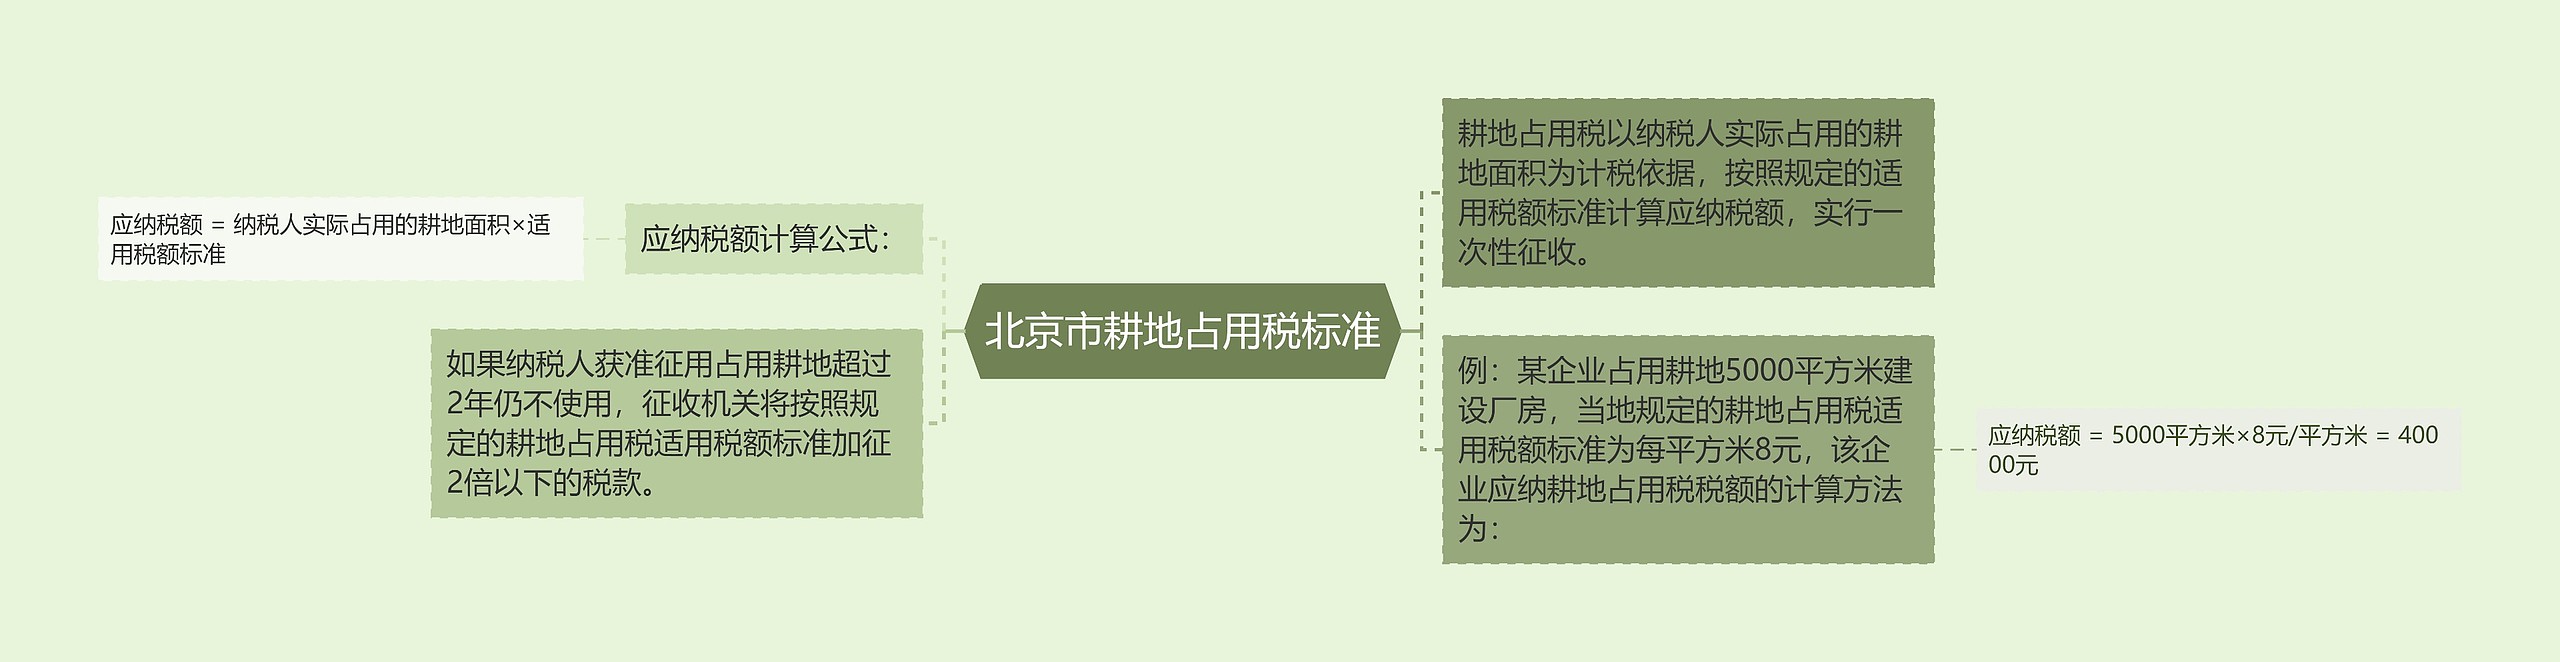 北京市耕地占用税标准思维导图